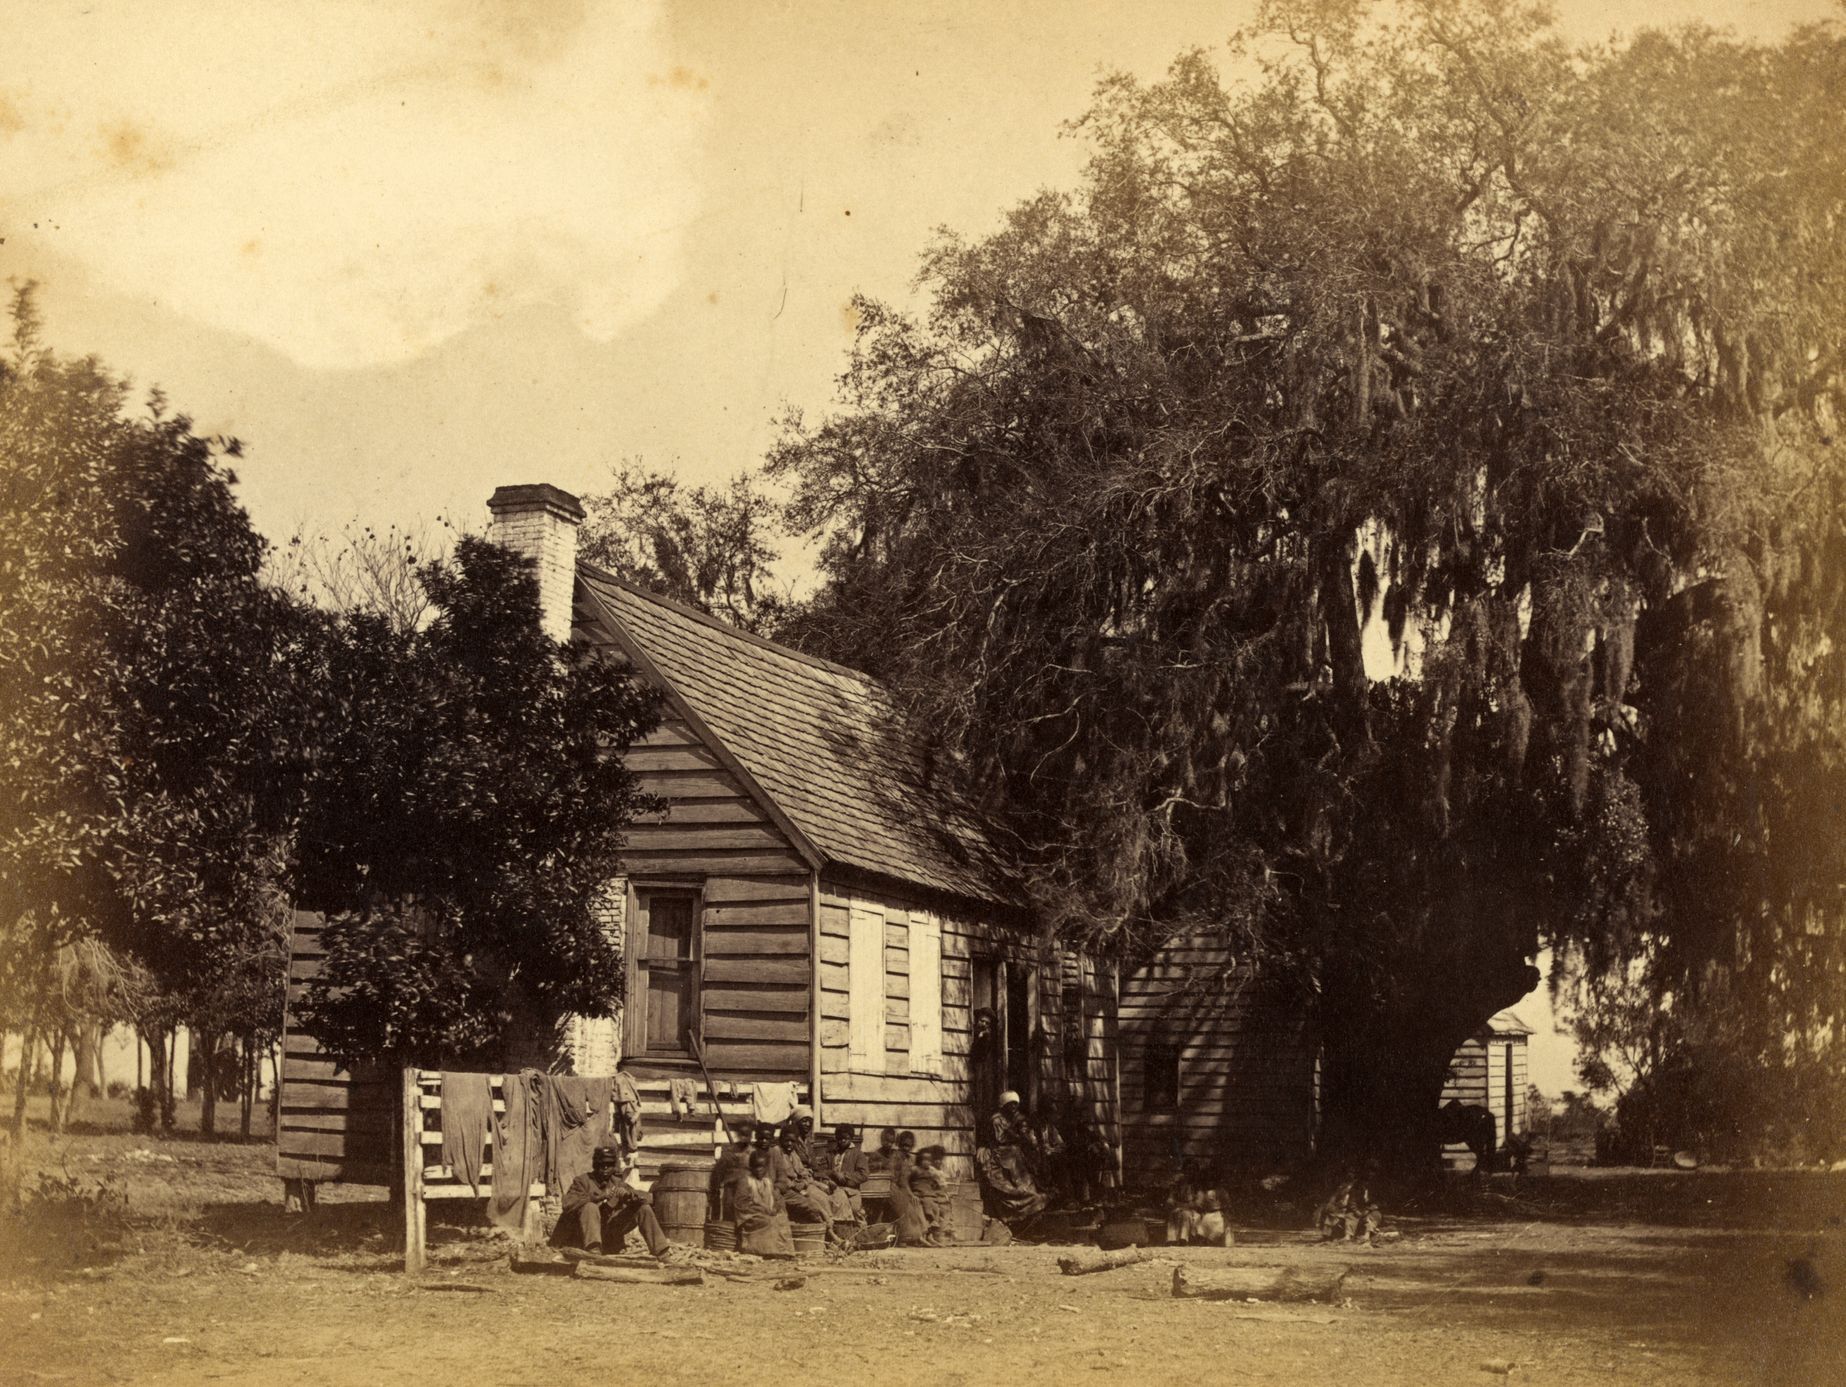 Otroci na plantáži v Jižní Karolíně